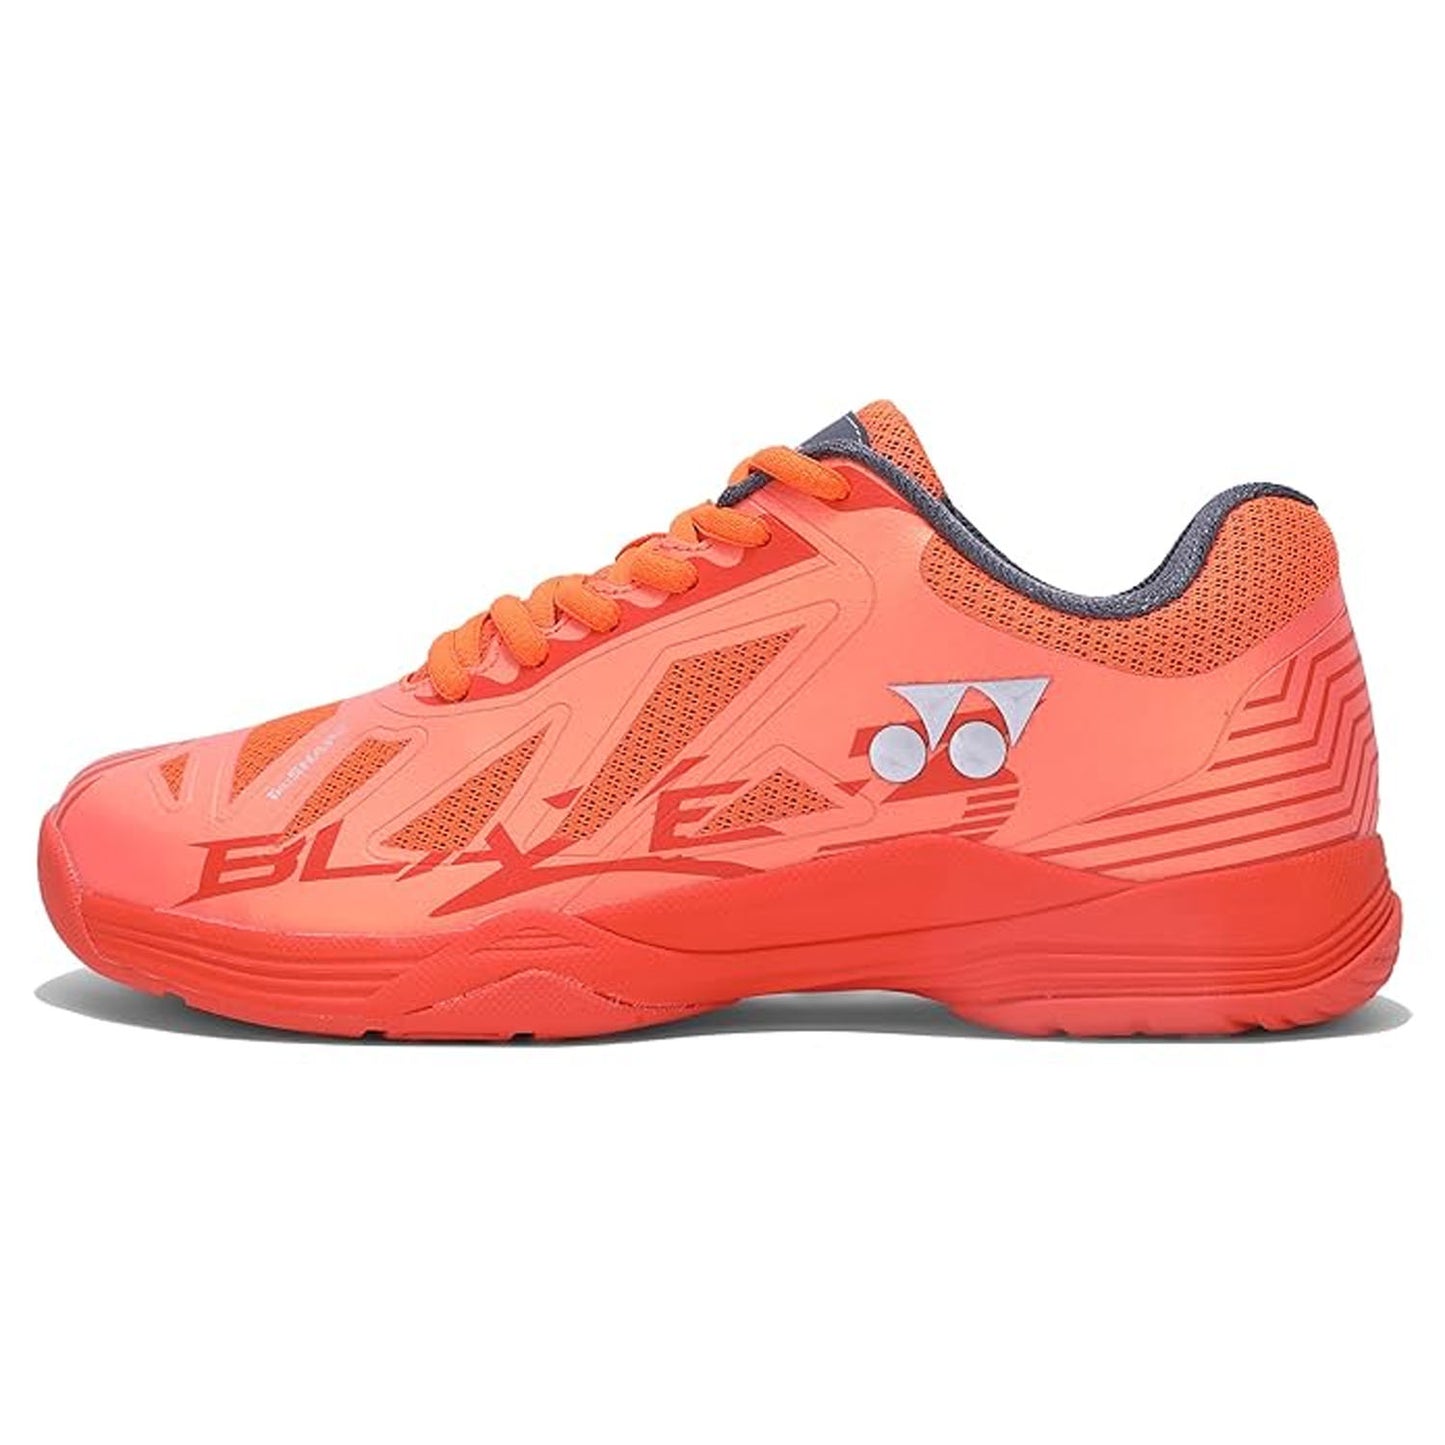 Yonex Blaze 3 Men's Badminton Shoes - Best Price online Prokicksports.com